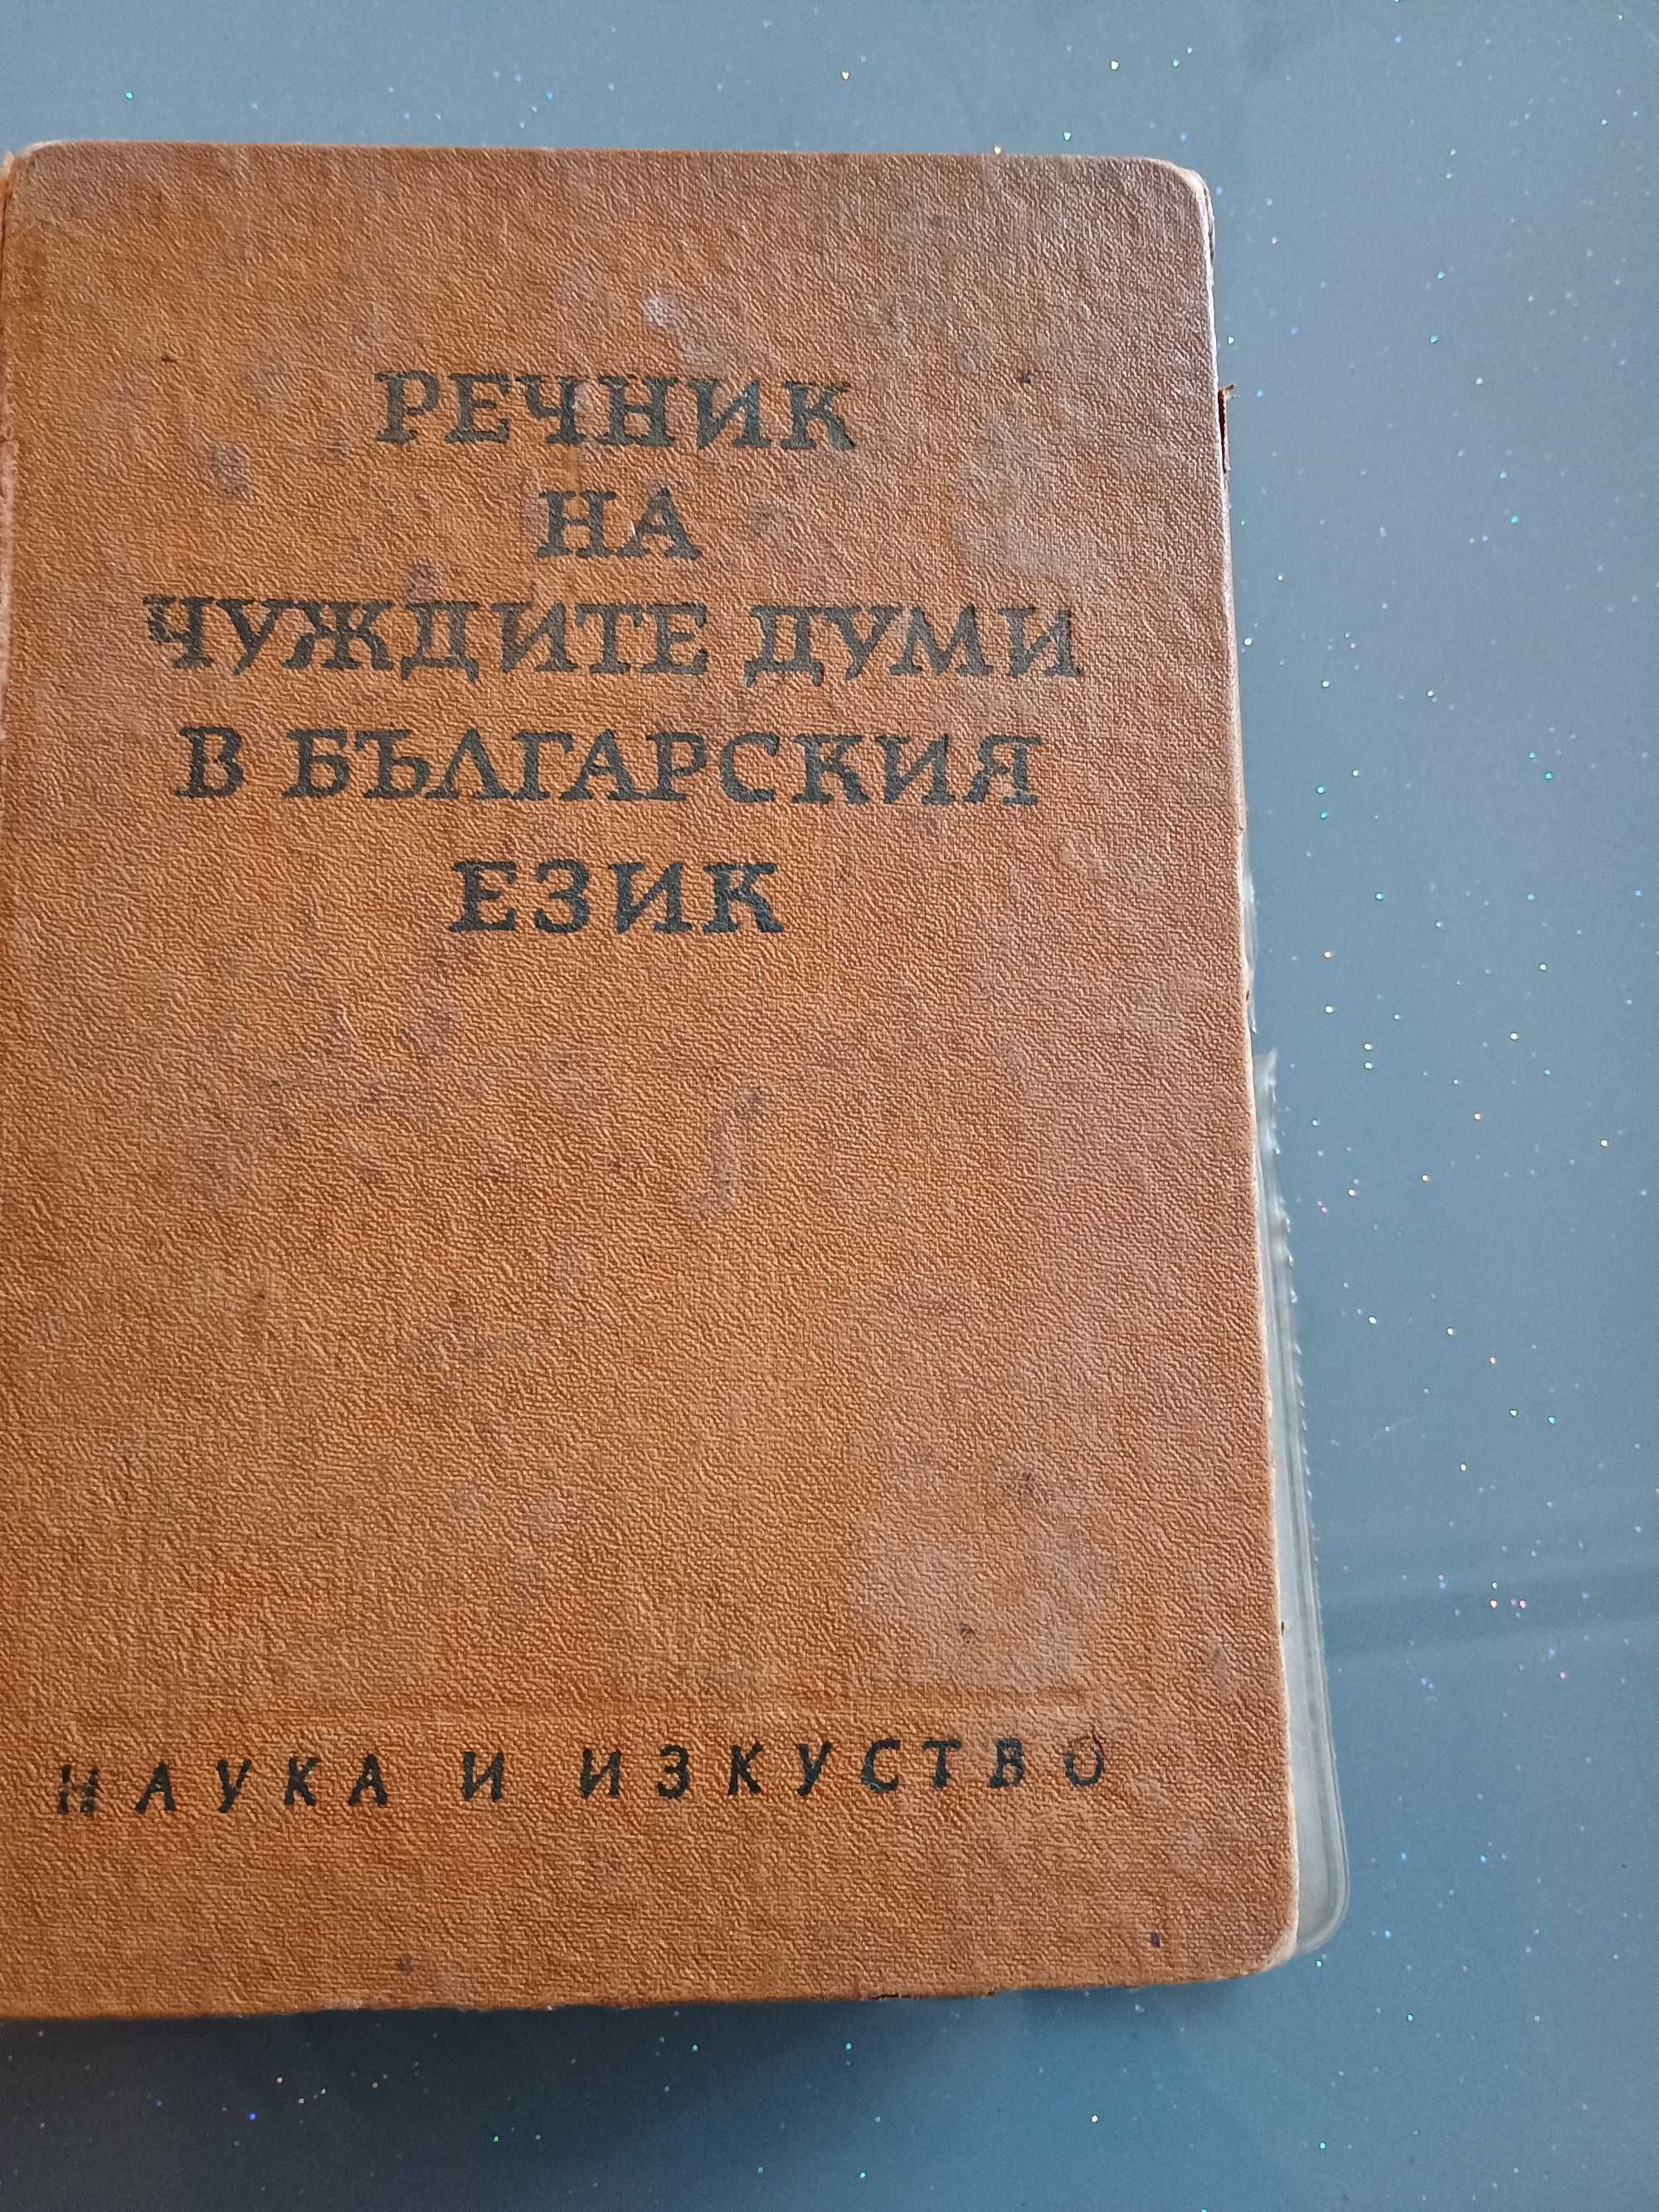 Стар речник на чуждите думи в българския език